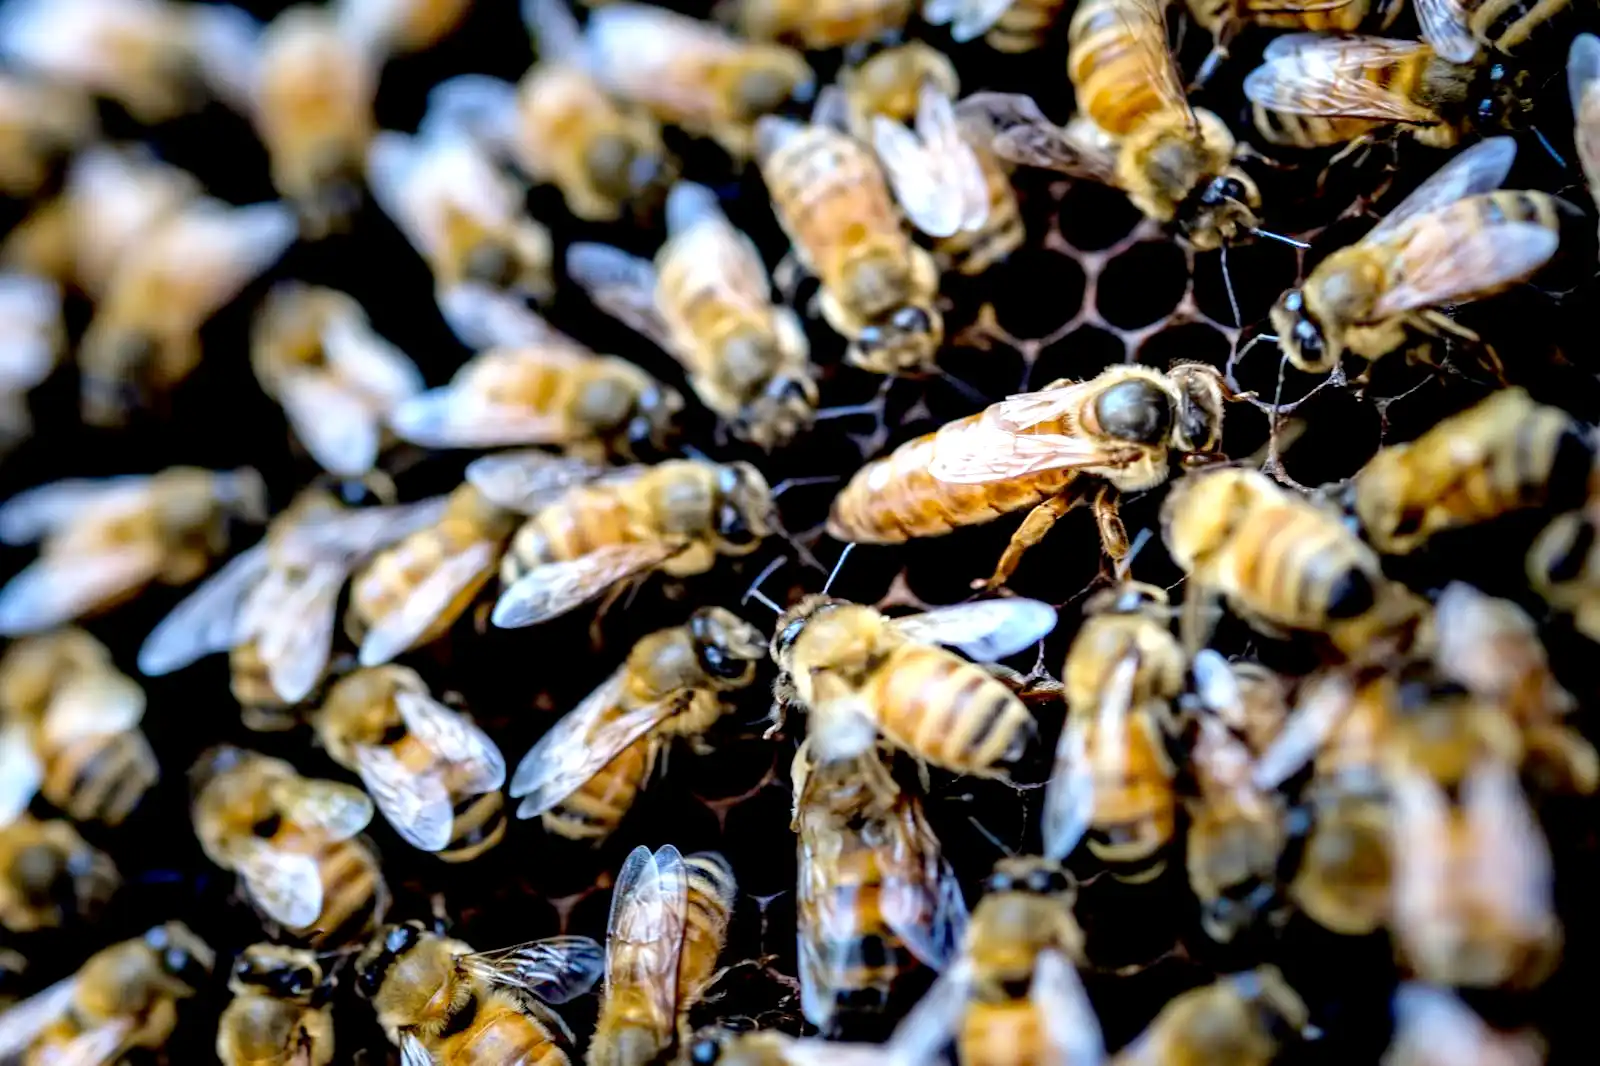 駆除した後の蜂の巣や蜂を安全に処理する方法